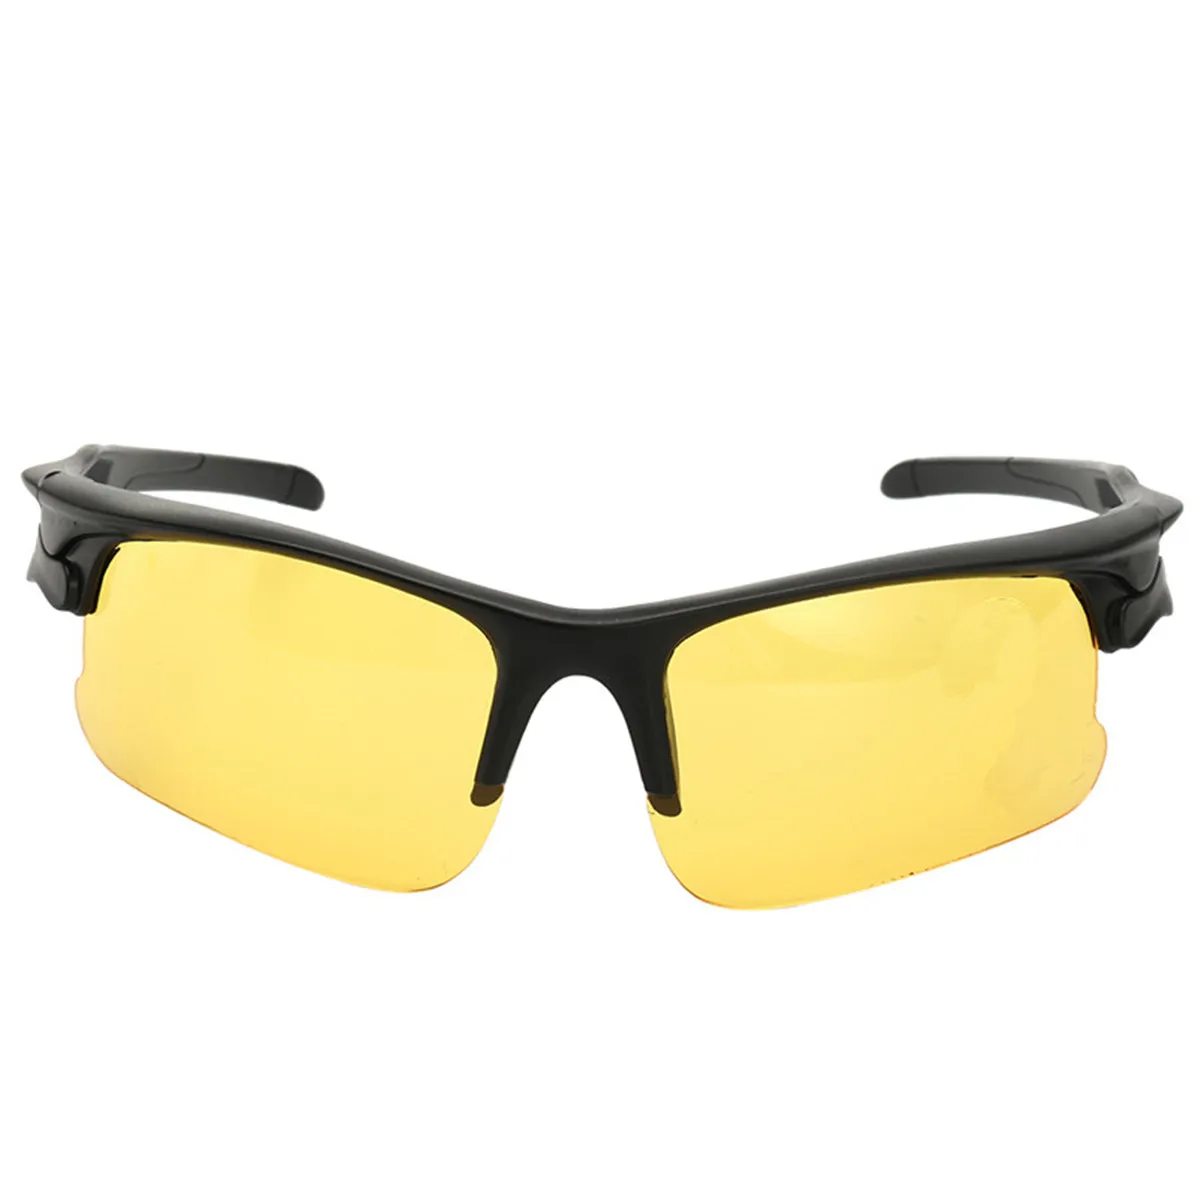 Очки ночного видения для вождения HD, антибликовые желтые солнцезащитные очки, металлические очки для ночного видения, поляризованные очки для вождения автомобиля - Название цвета: 3106